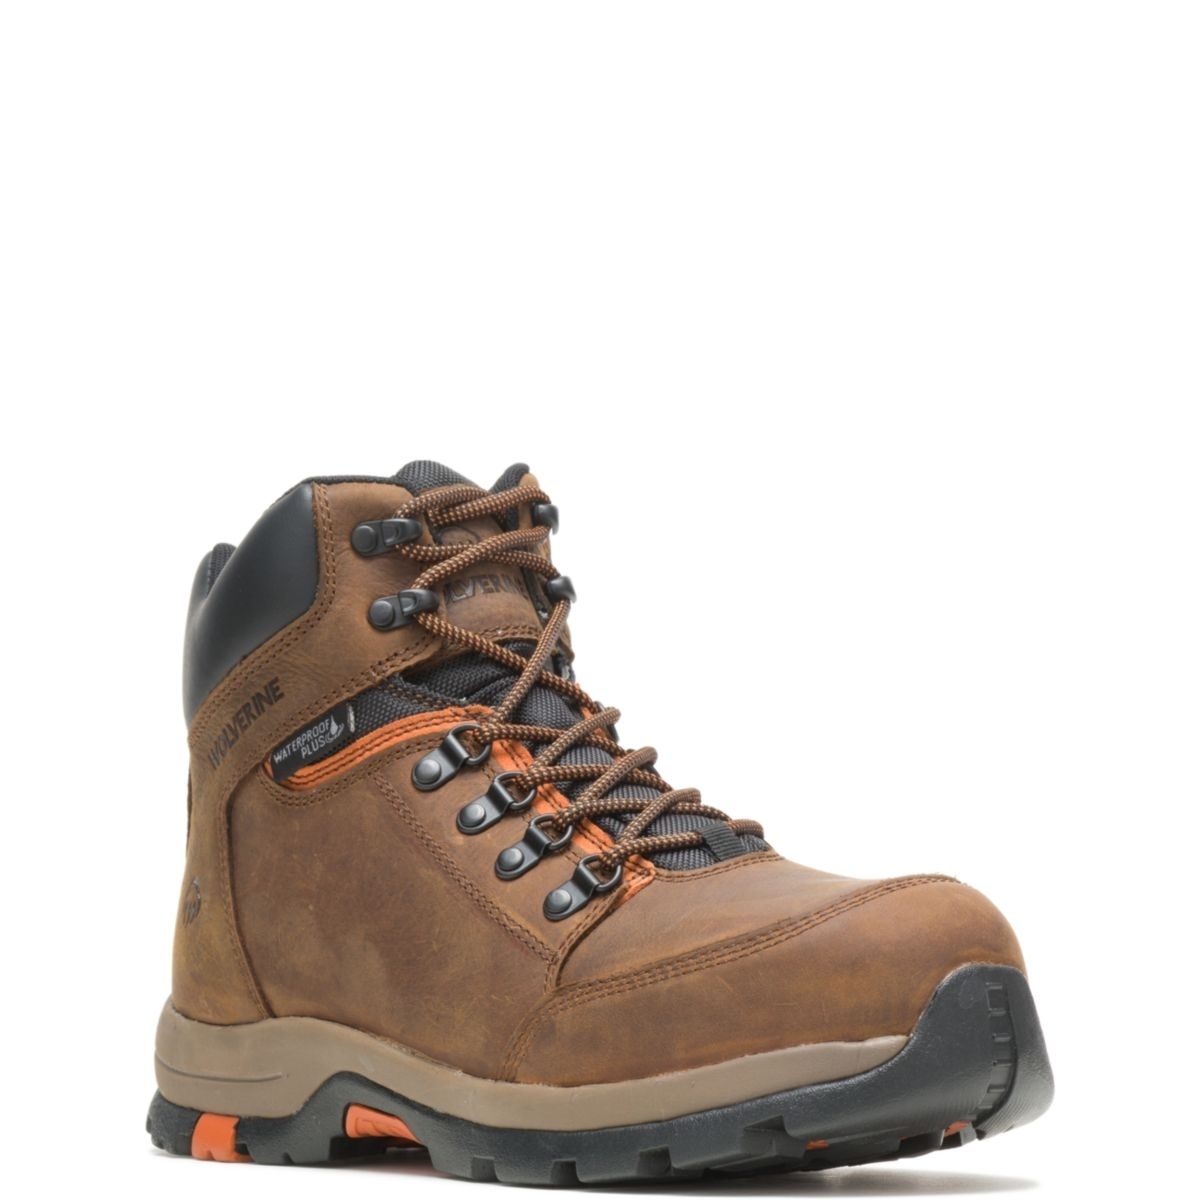 WOLVERINE Men's Grayson Steel Toe Waterproof Work Boot Brown - W211043 BROWN - BROWN, 9